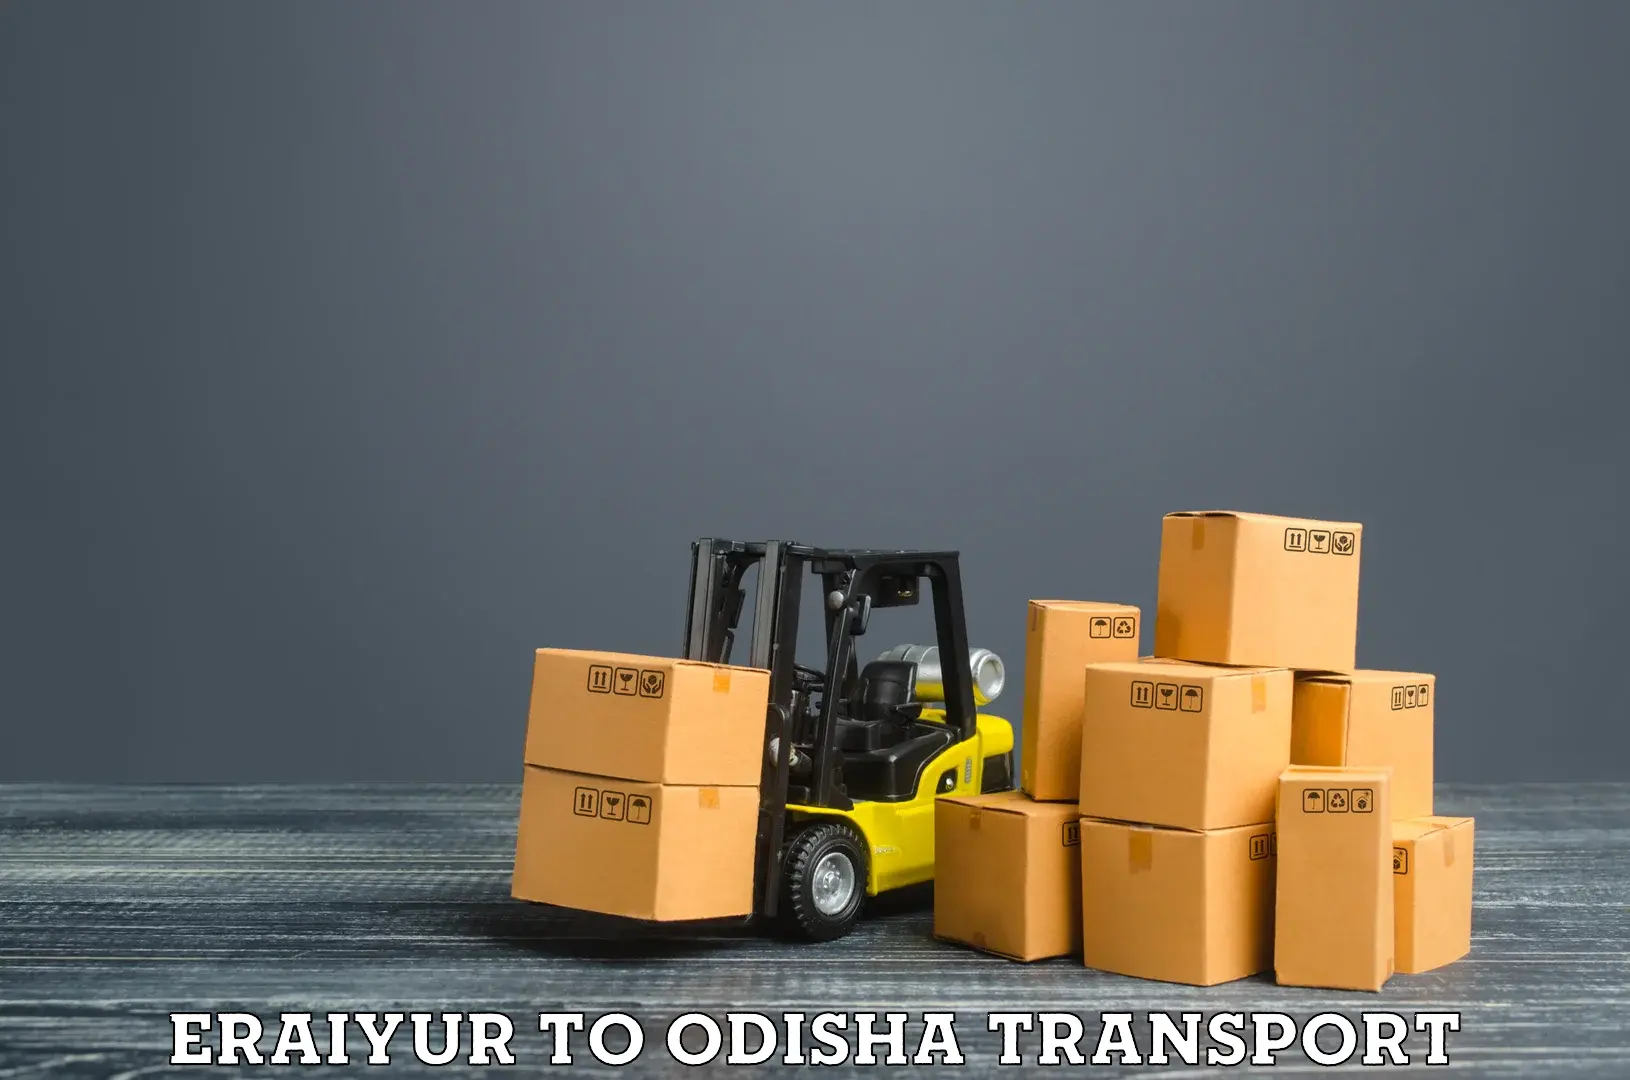 Bike shipping service Eraiyur to Odisha